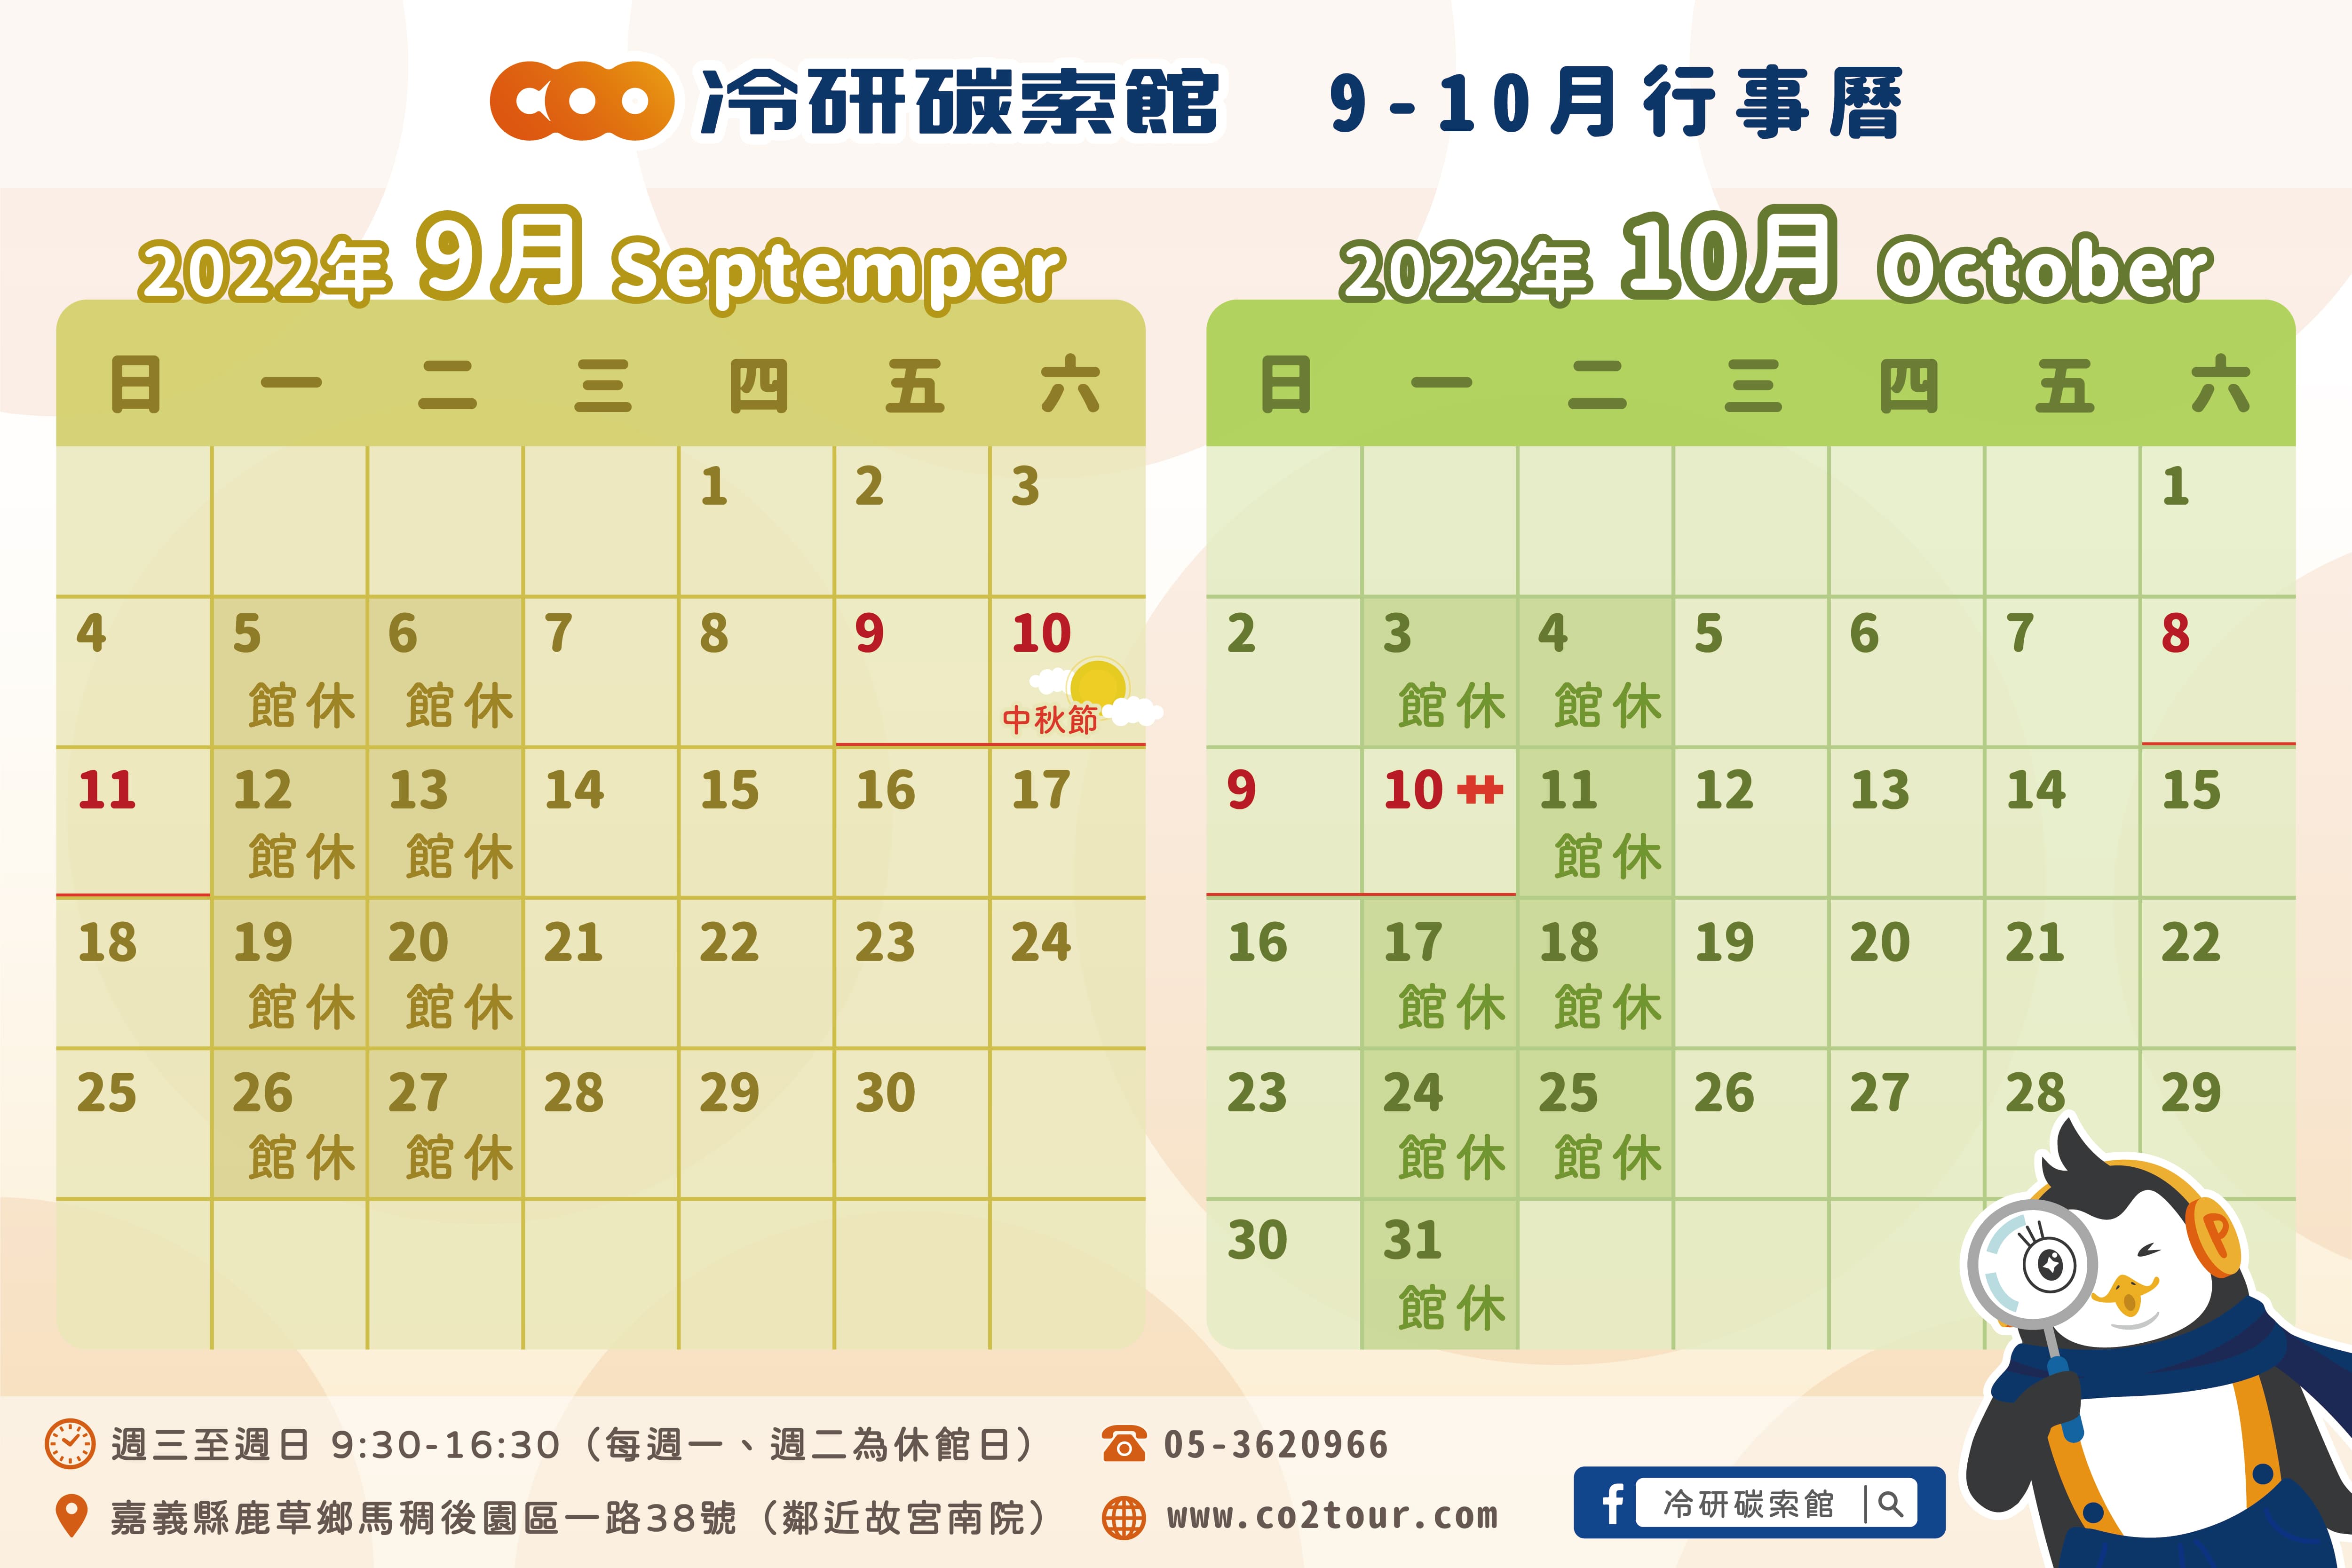 2022年9-10月行事曆